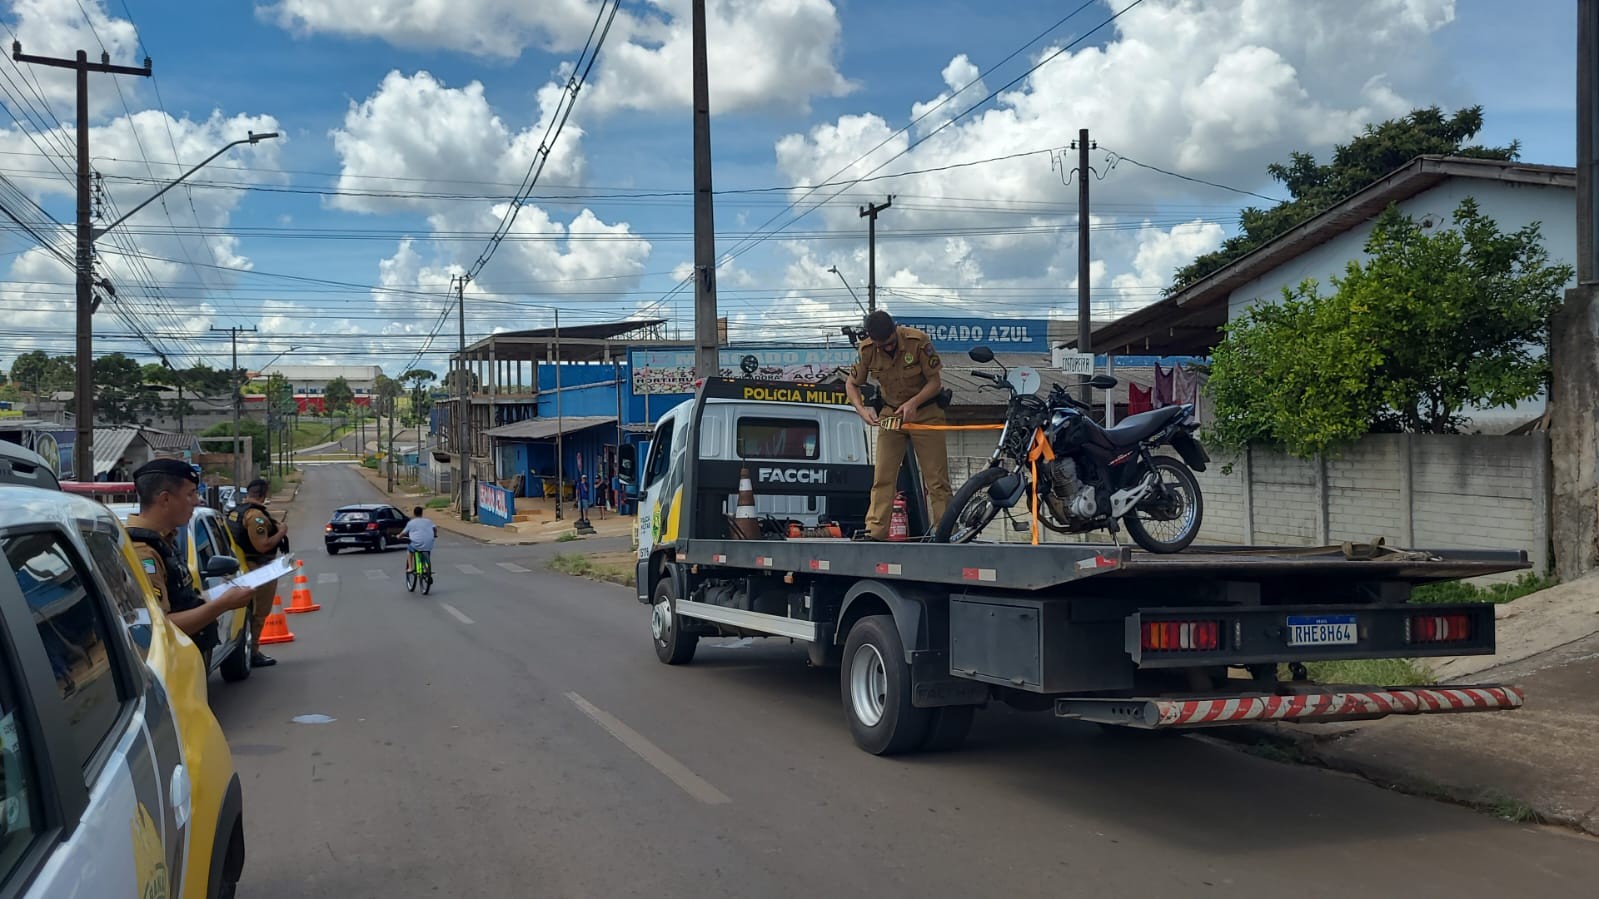 Motociclistas com habilitações suspensas se envolvem em acidente em Guarapuava, diz PM